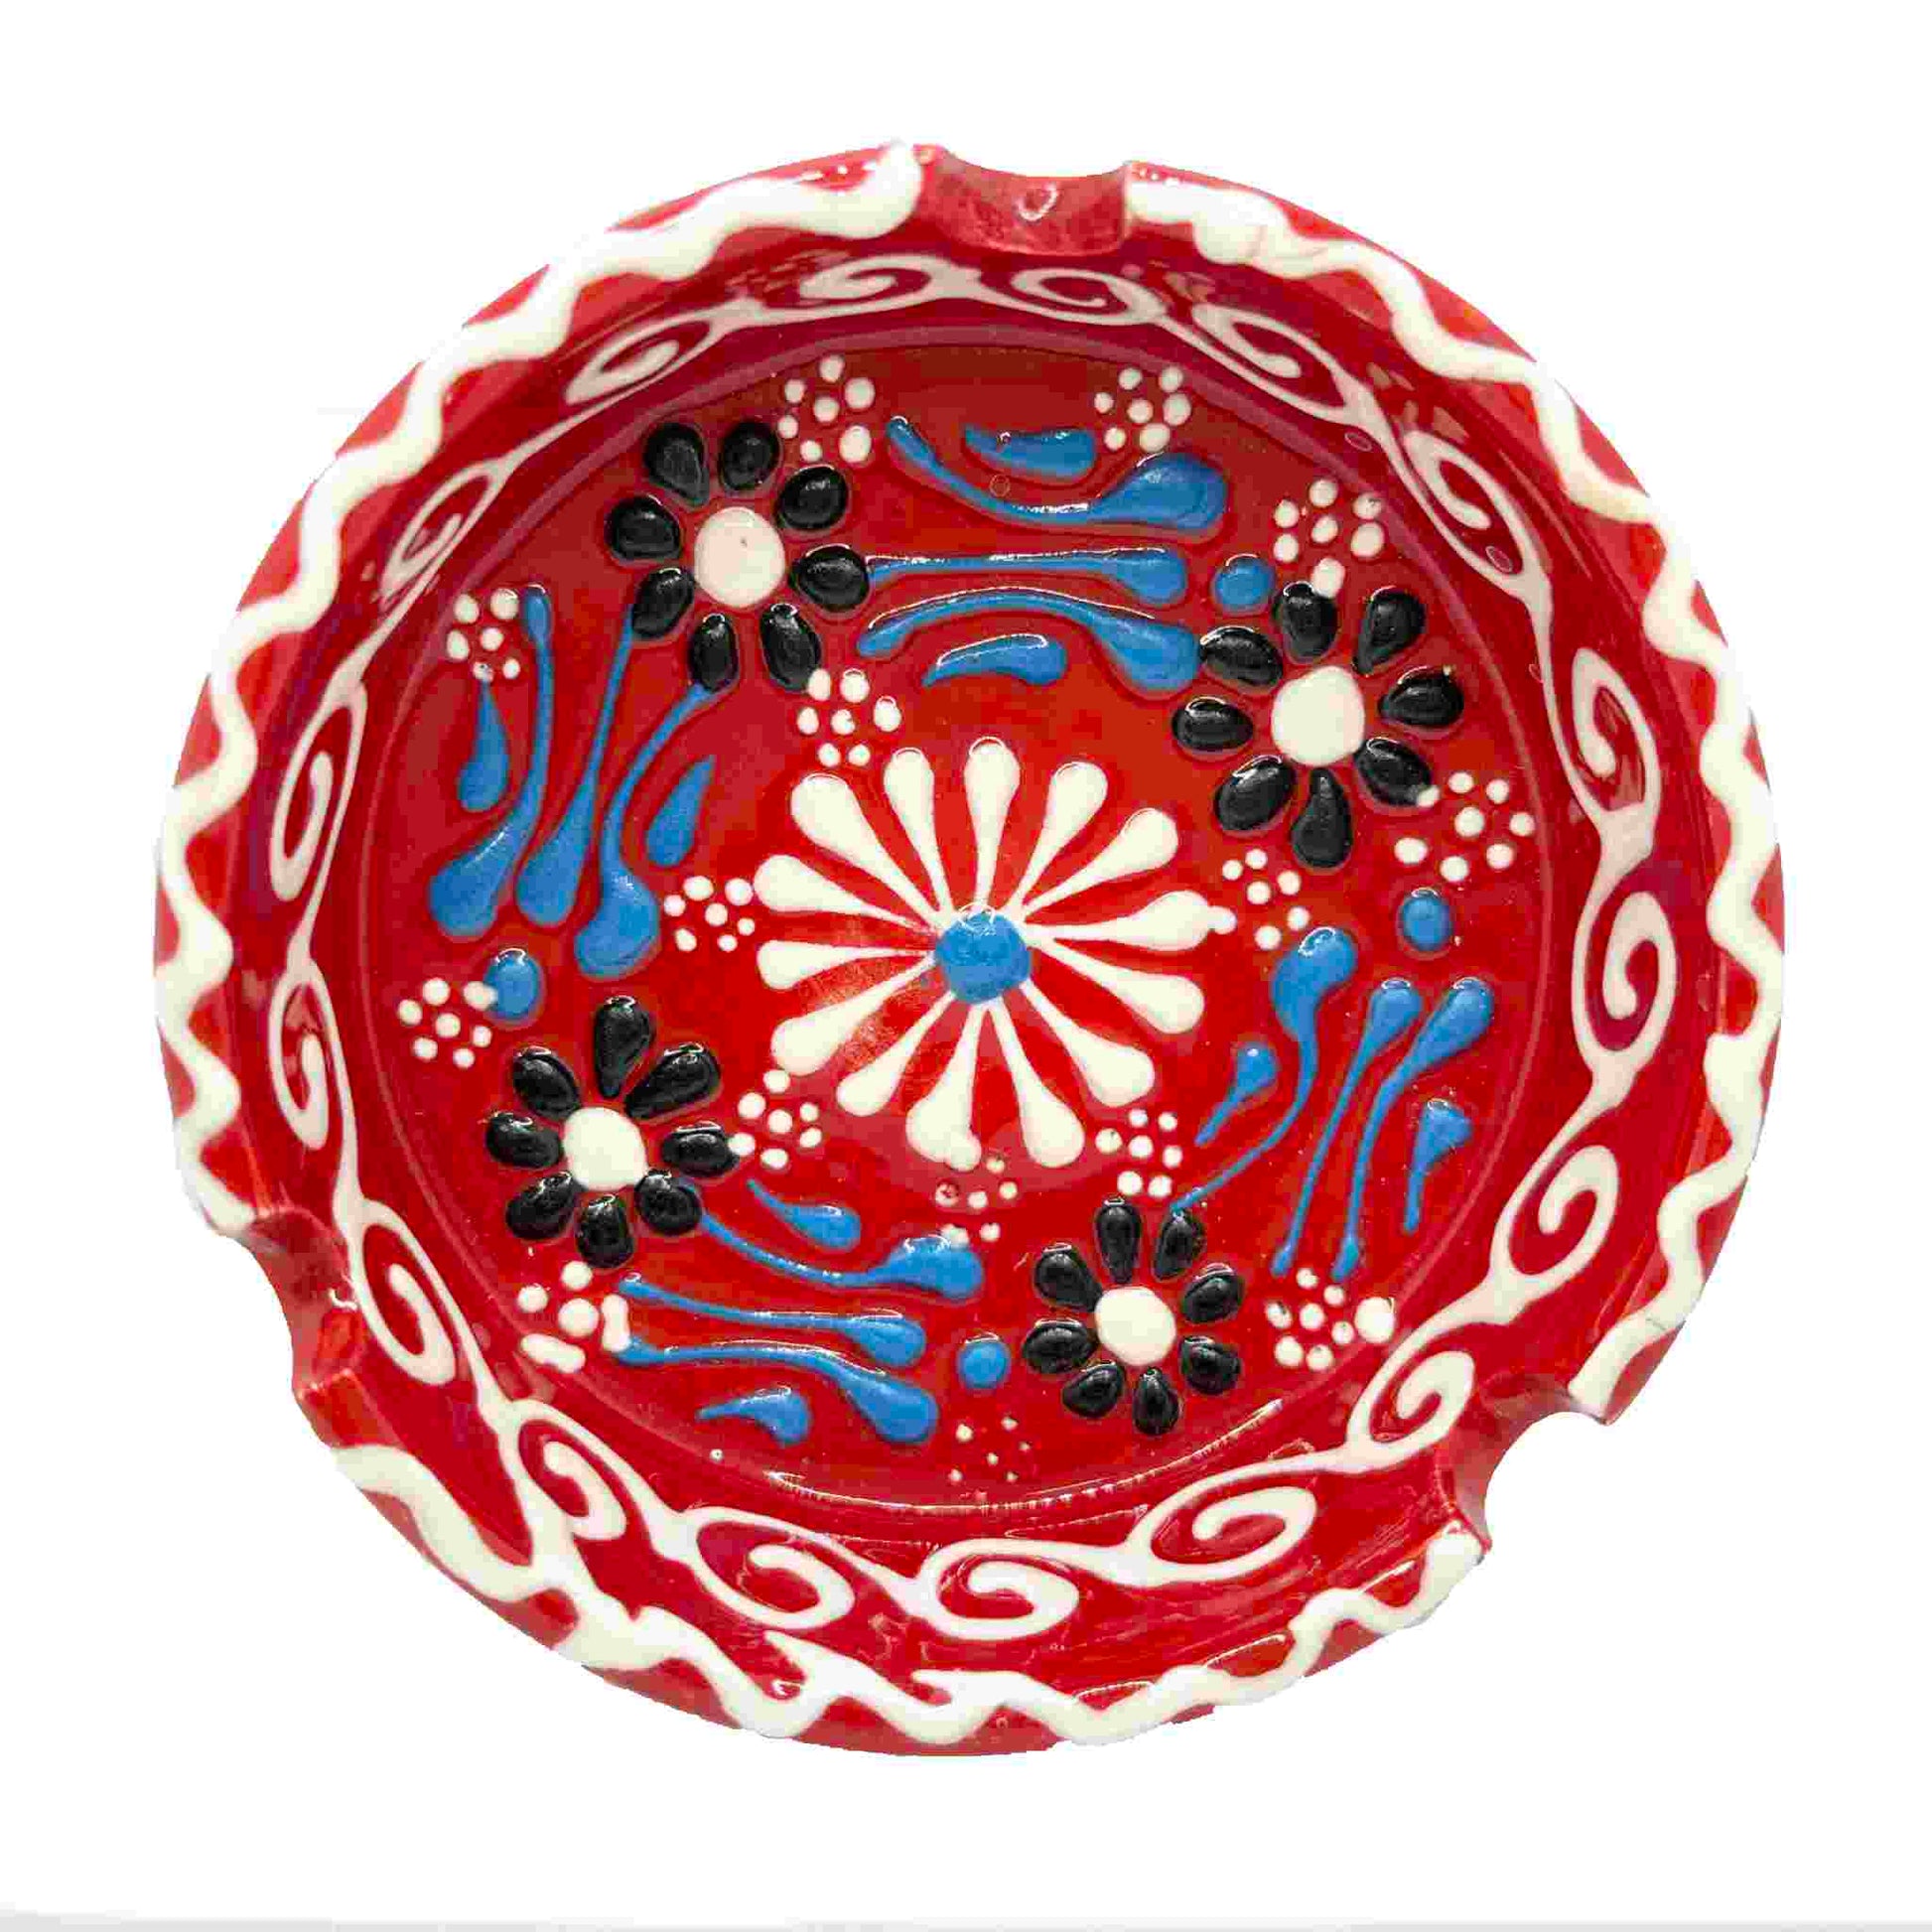 Cenicero de cerámica turca, artesanal, grande Lace rojo